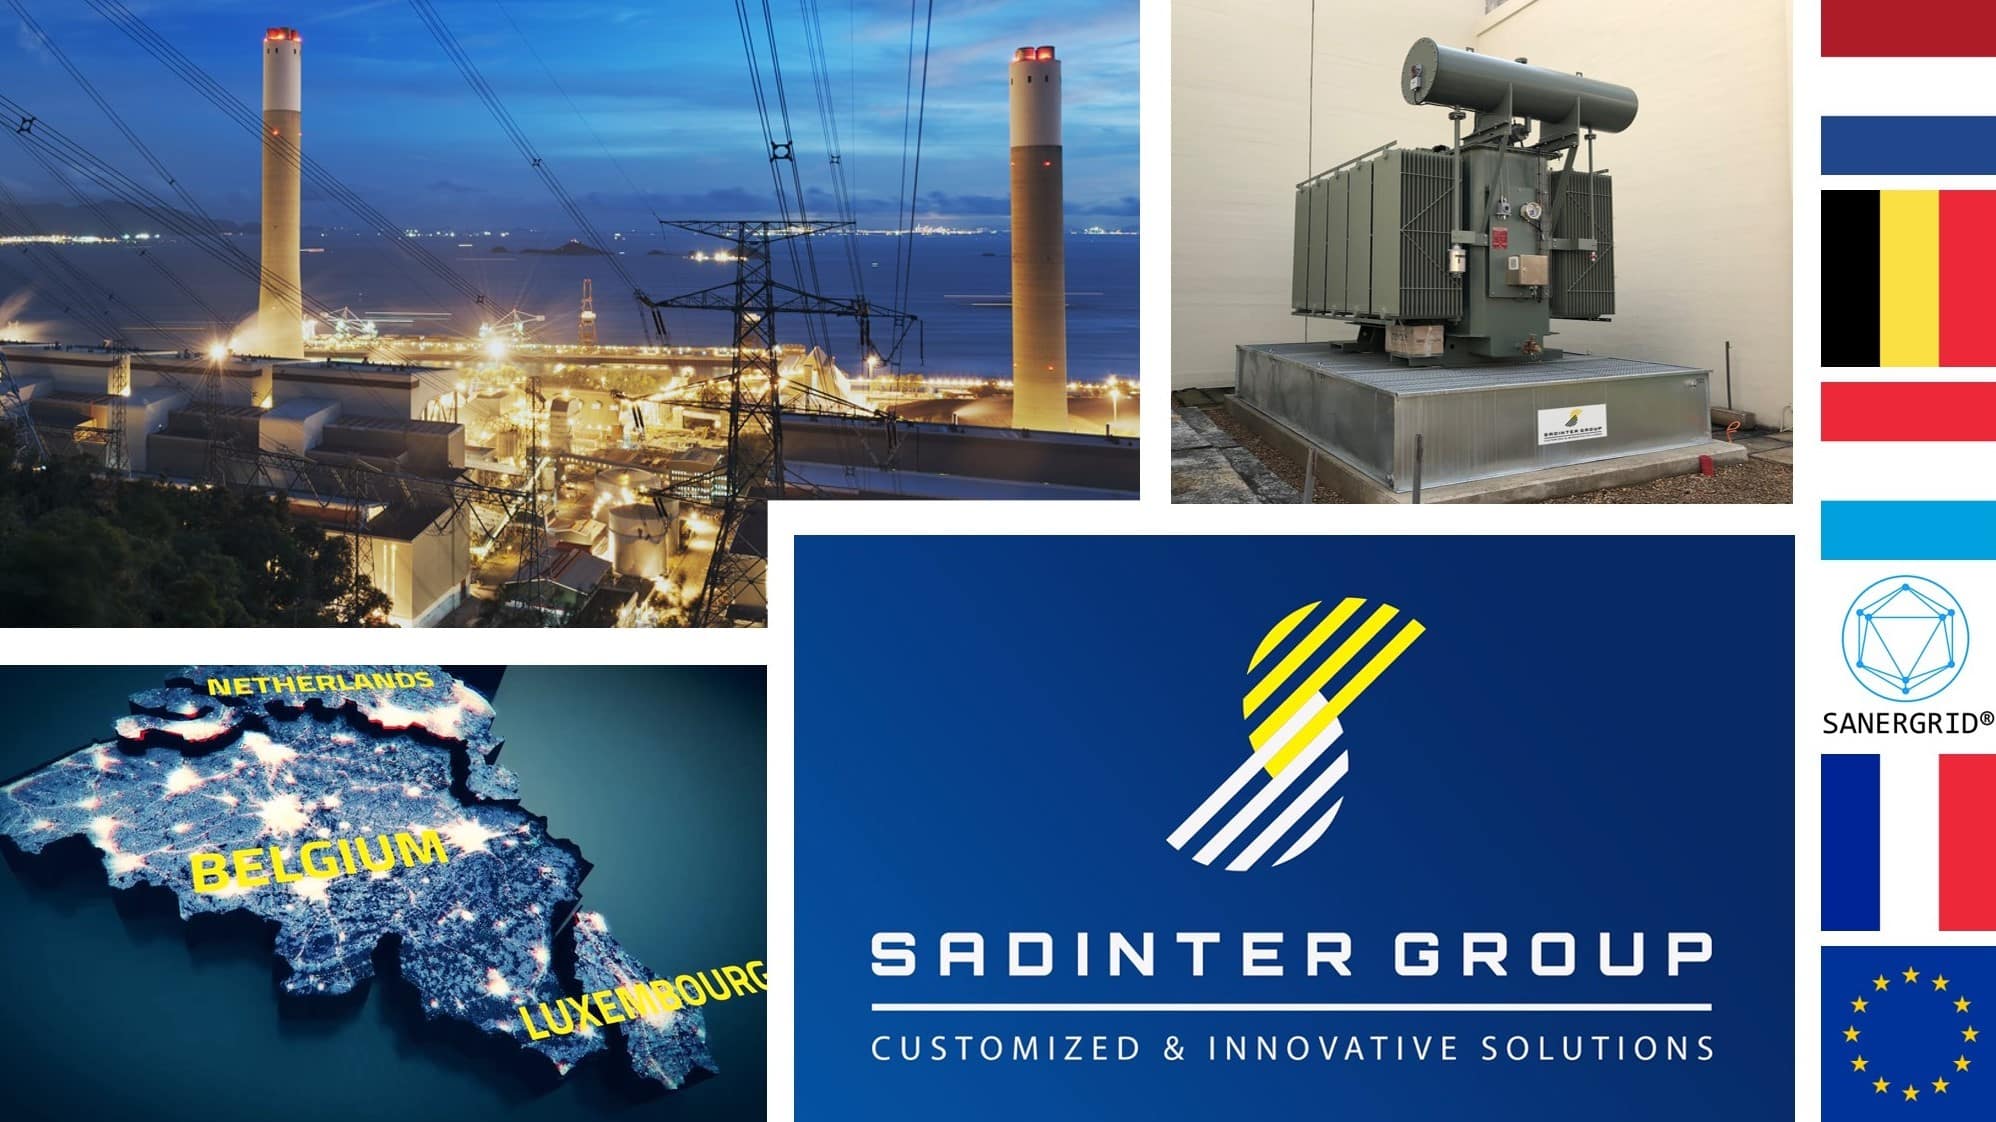 SADINTER distribuidor soluciones de gestión de riesgos industria eléctrica SANERGRID